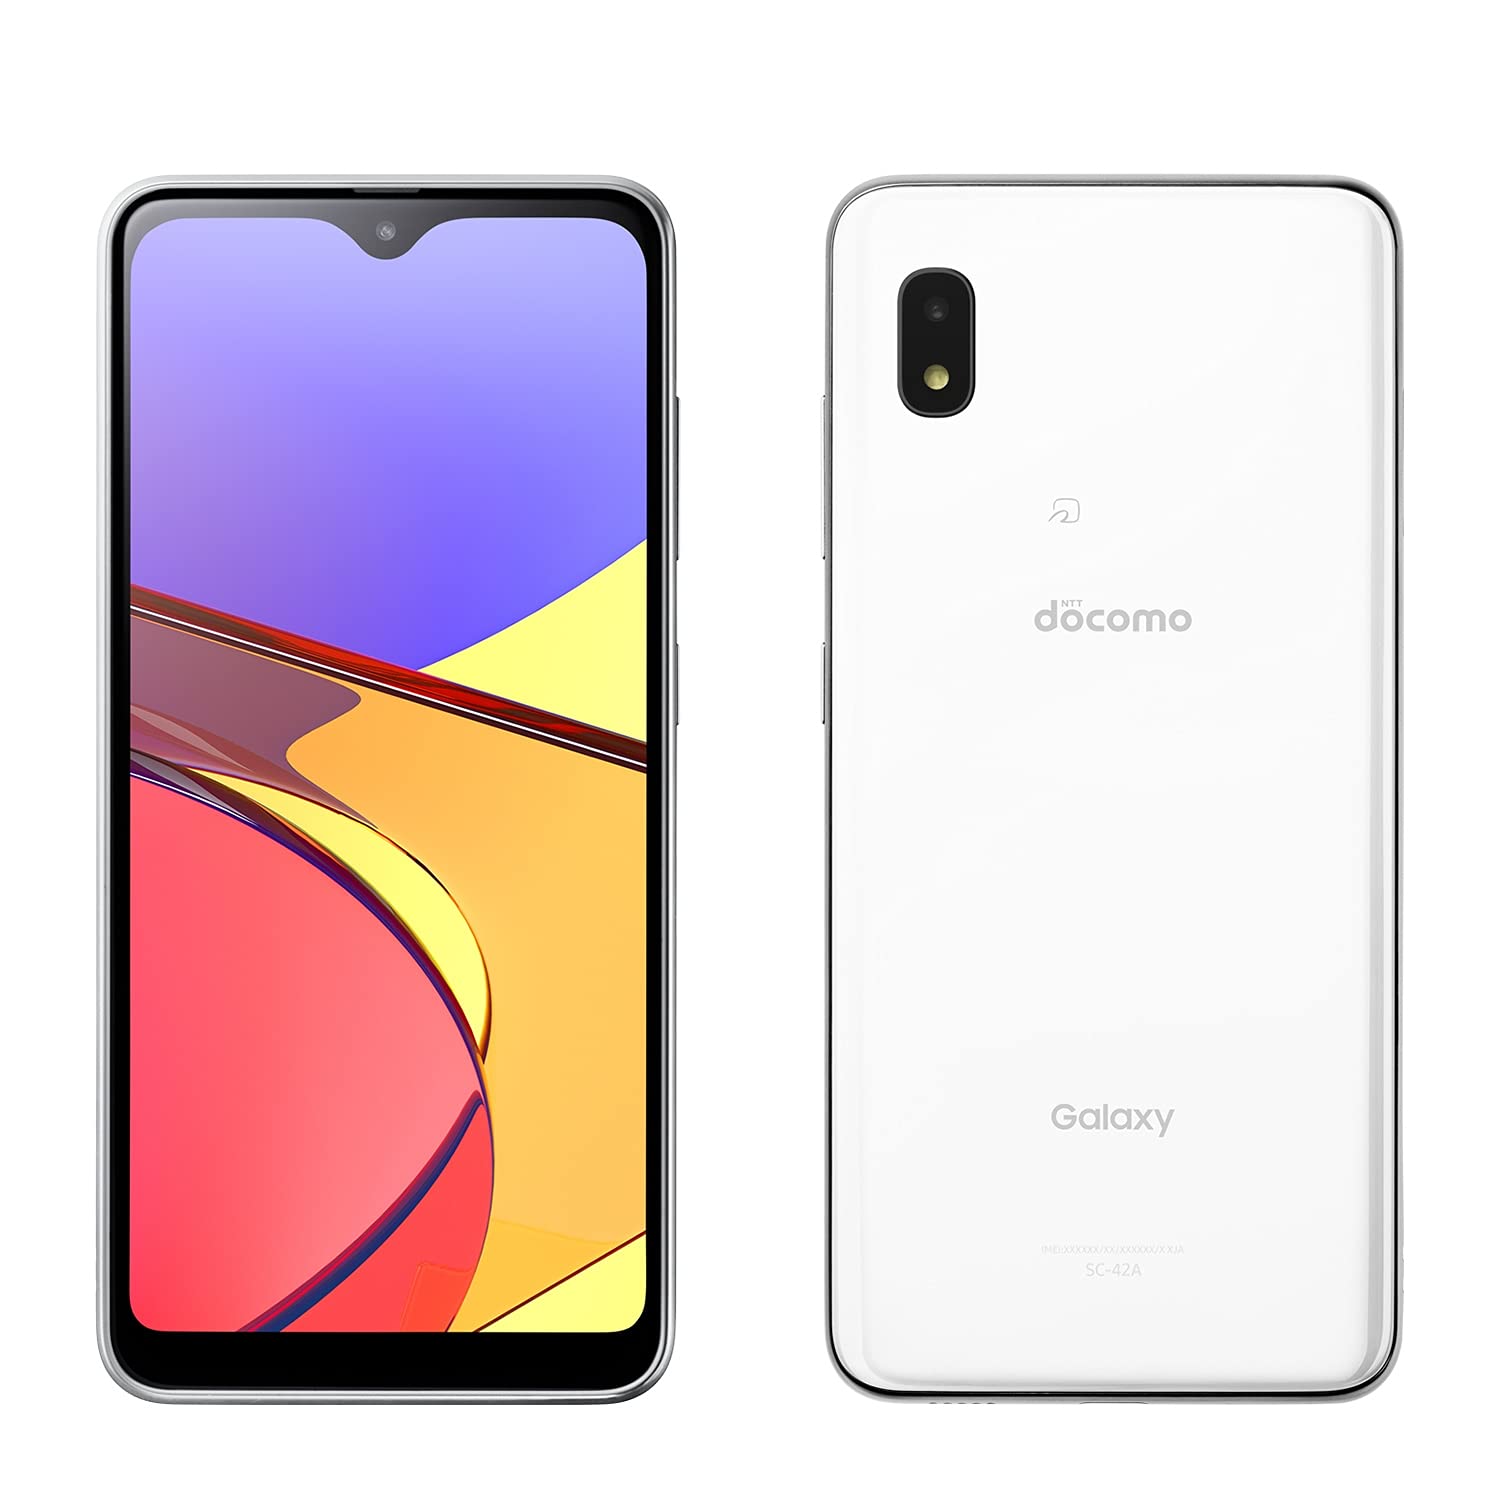 Dòng điện thoại Galaxy A21 mới nhất của Samsung đã ra mắt với thiết kế hoàn toàn mới và tính năng đột phá. Màn hình rộng đẹp 6.5 inch, camera đẳng cấp, pin lâu trôi là những điểm nhấn đáng chú ý của sản phẩm này. Hãy xem hình ảnh chi tiết để hiểu hơn về chiếc điện thoại này.